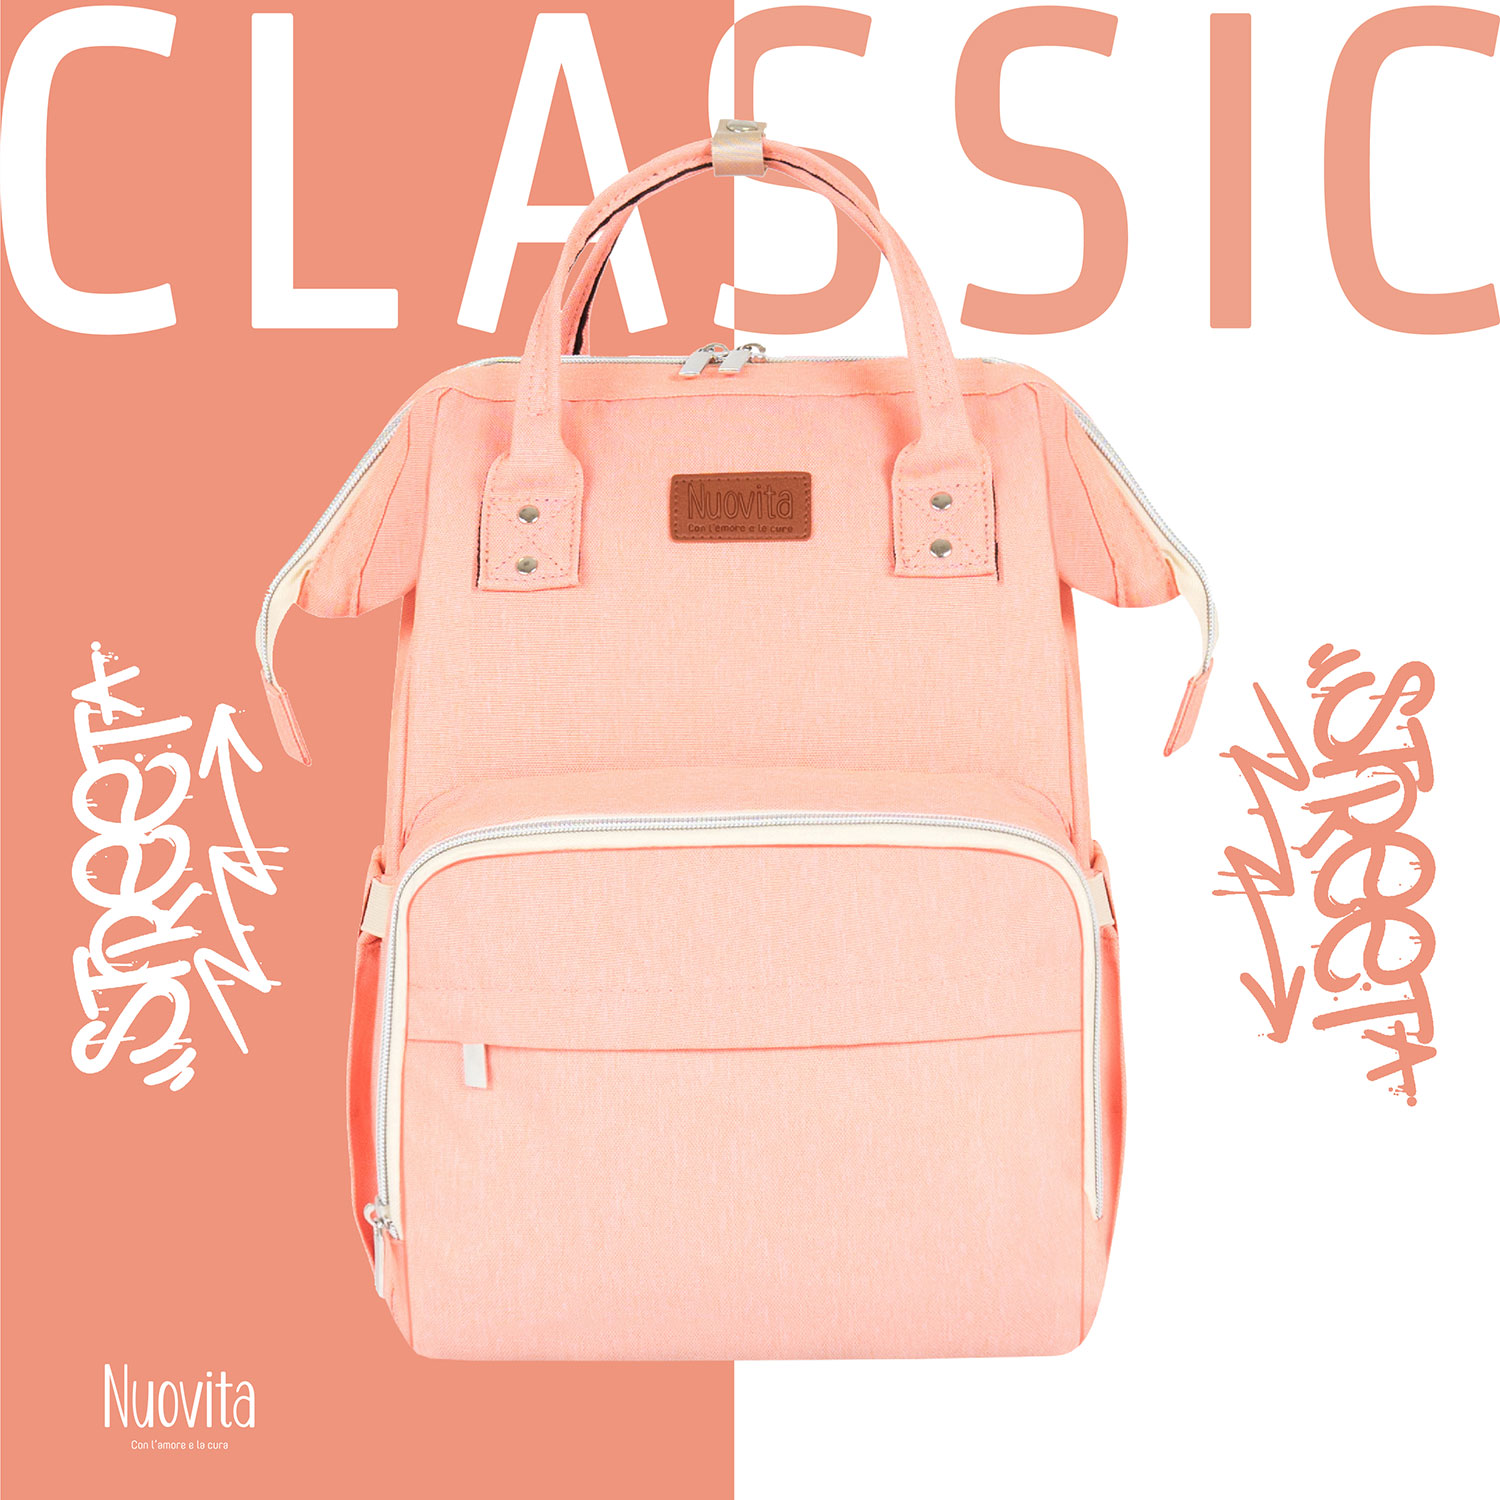 Рюкзак Nuovita CAPCAP classic (Rosa/Розовый) рюкзак nuovita capcap classic nero